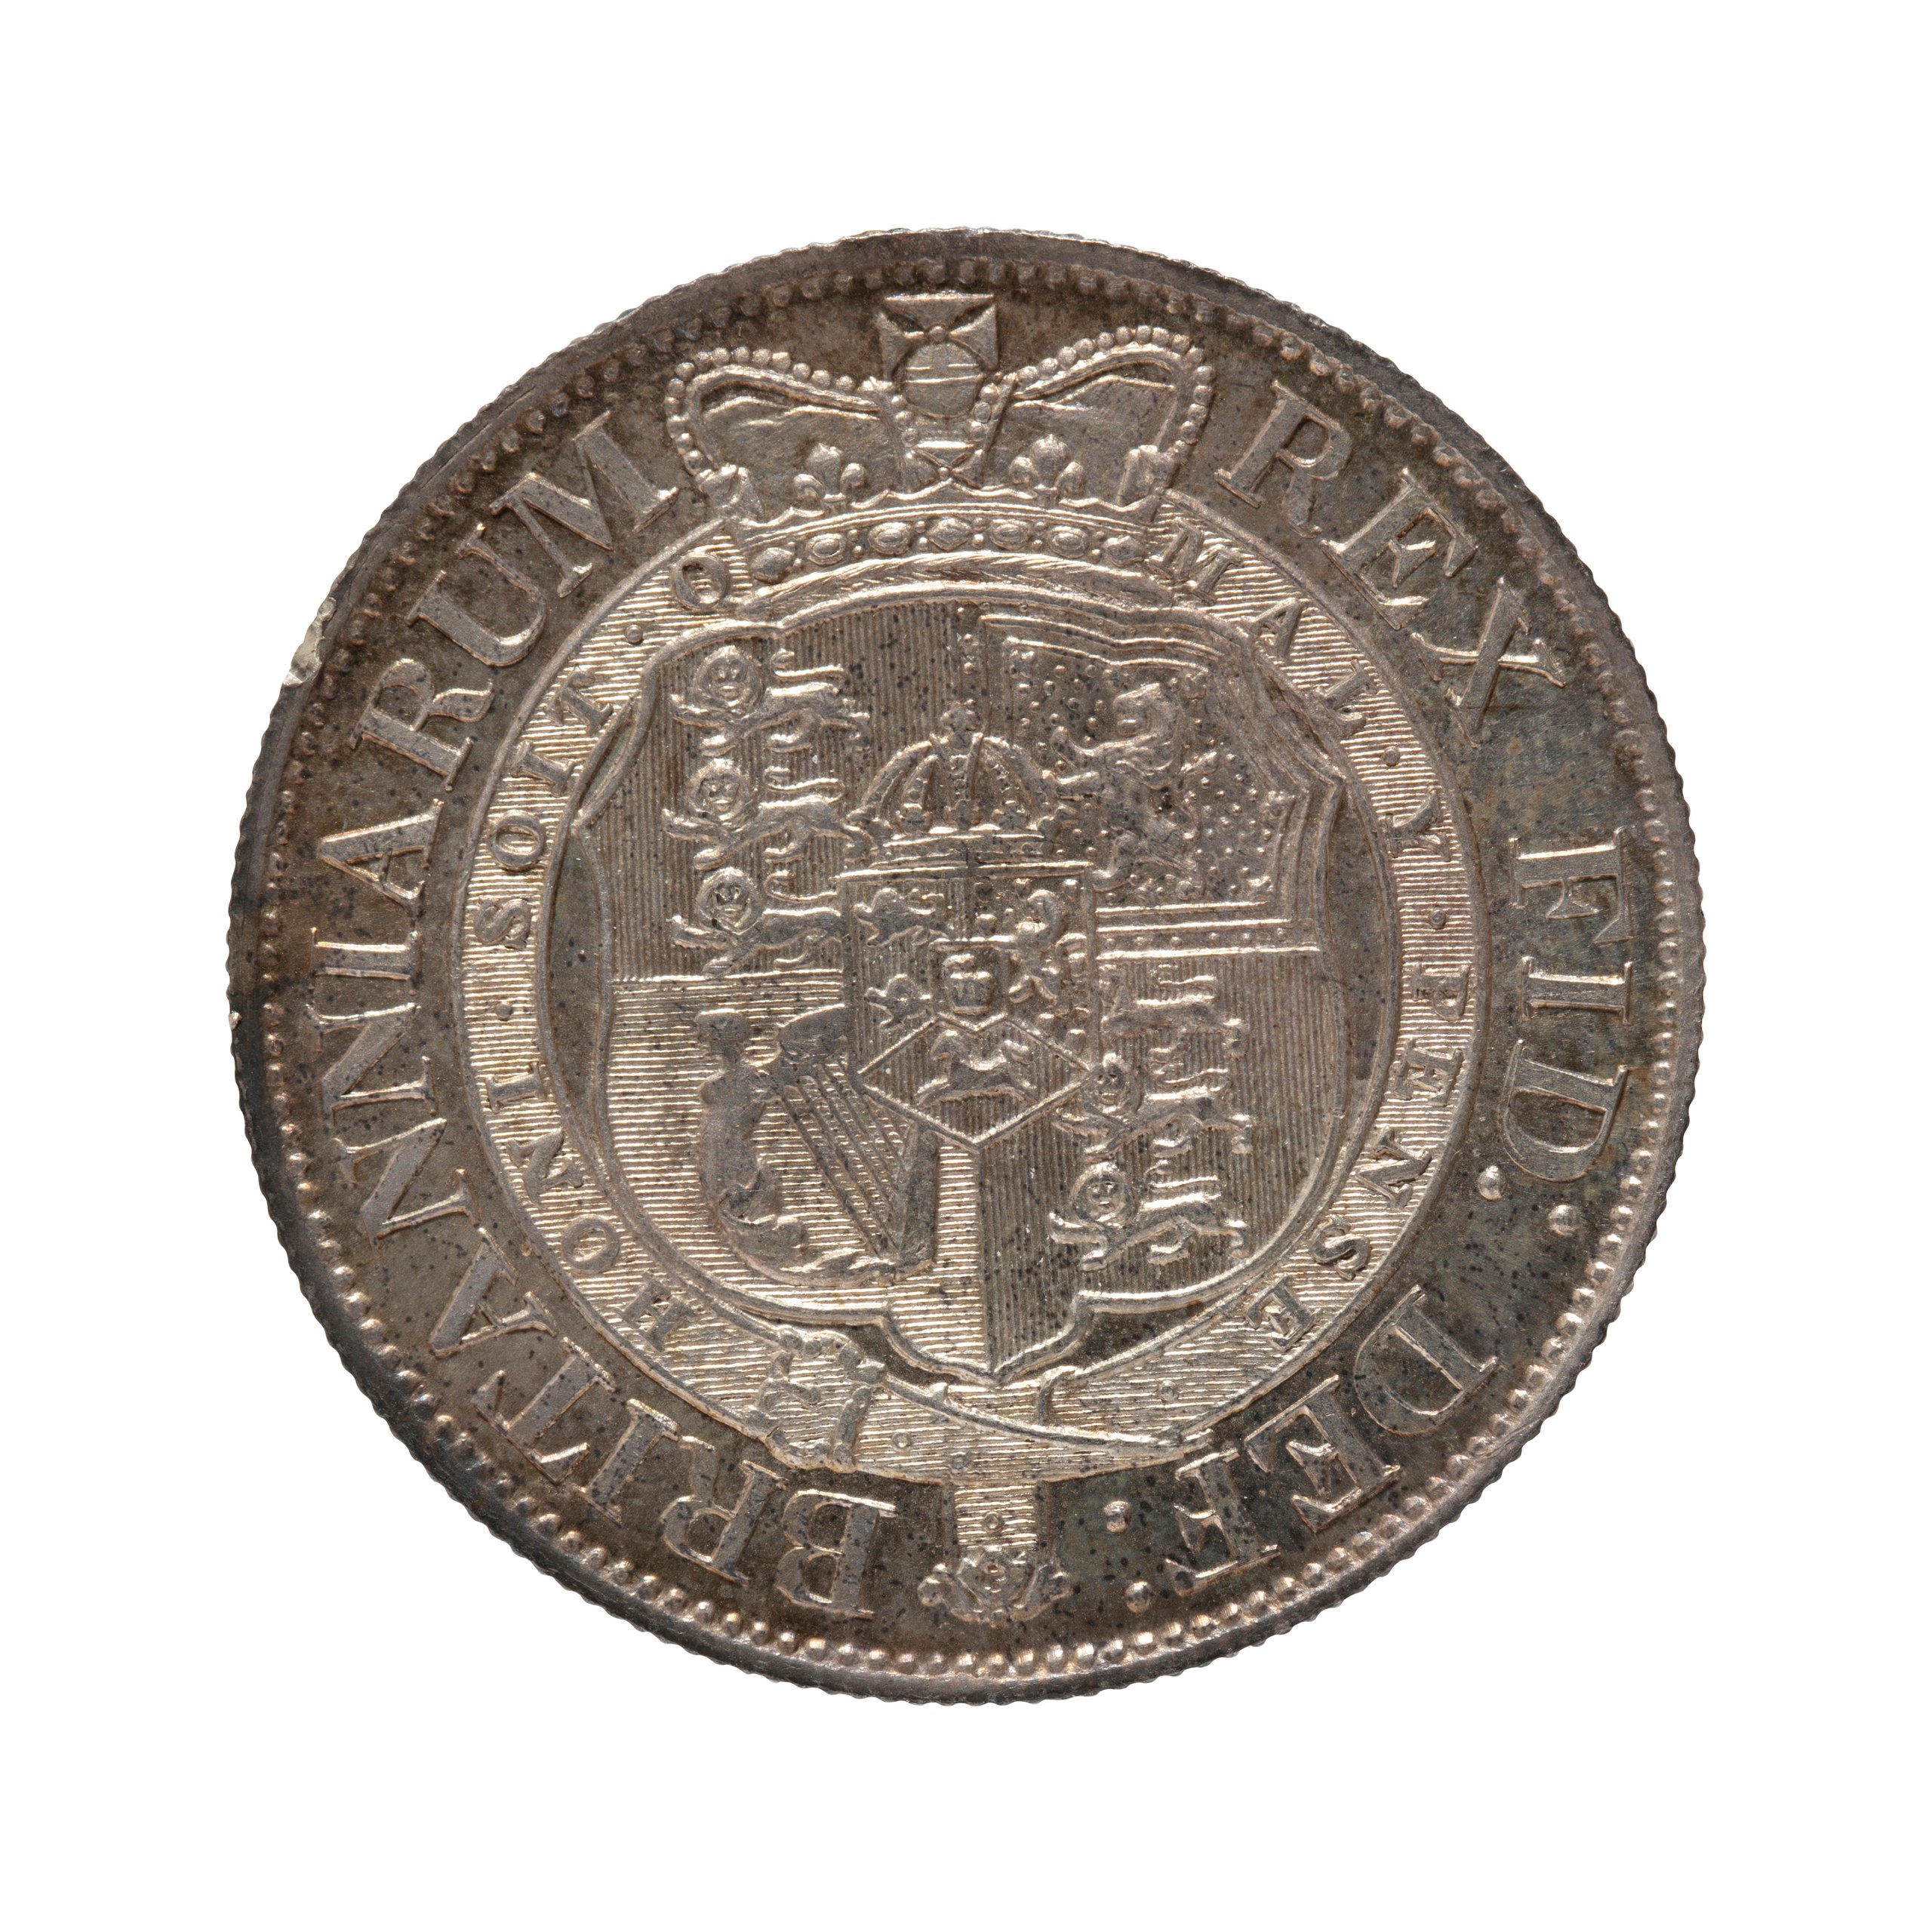 British half crown coin